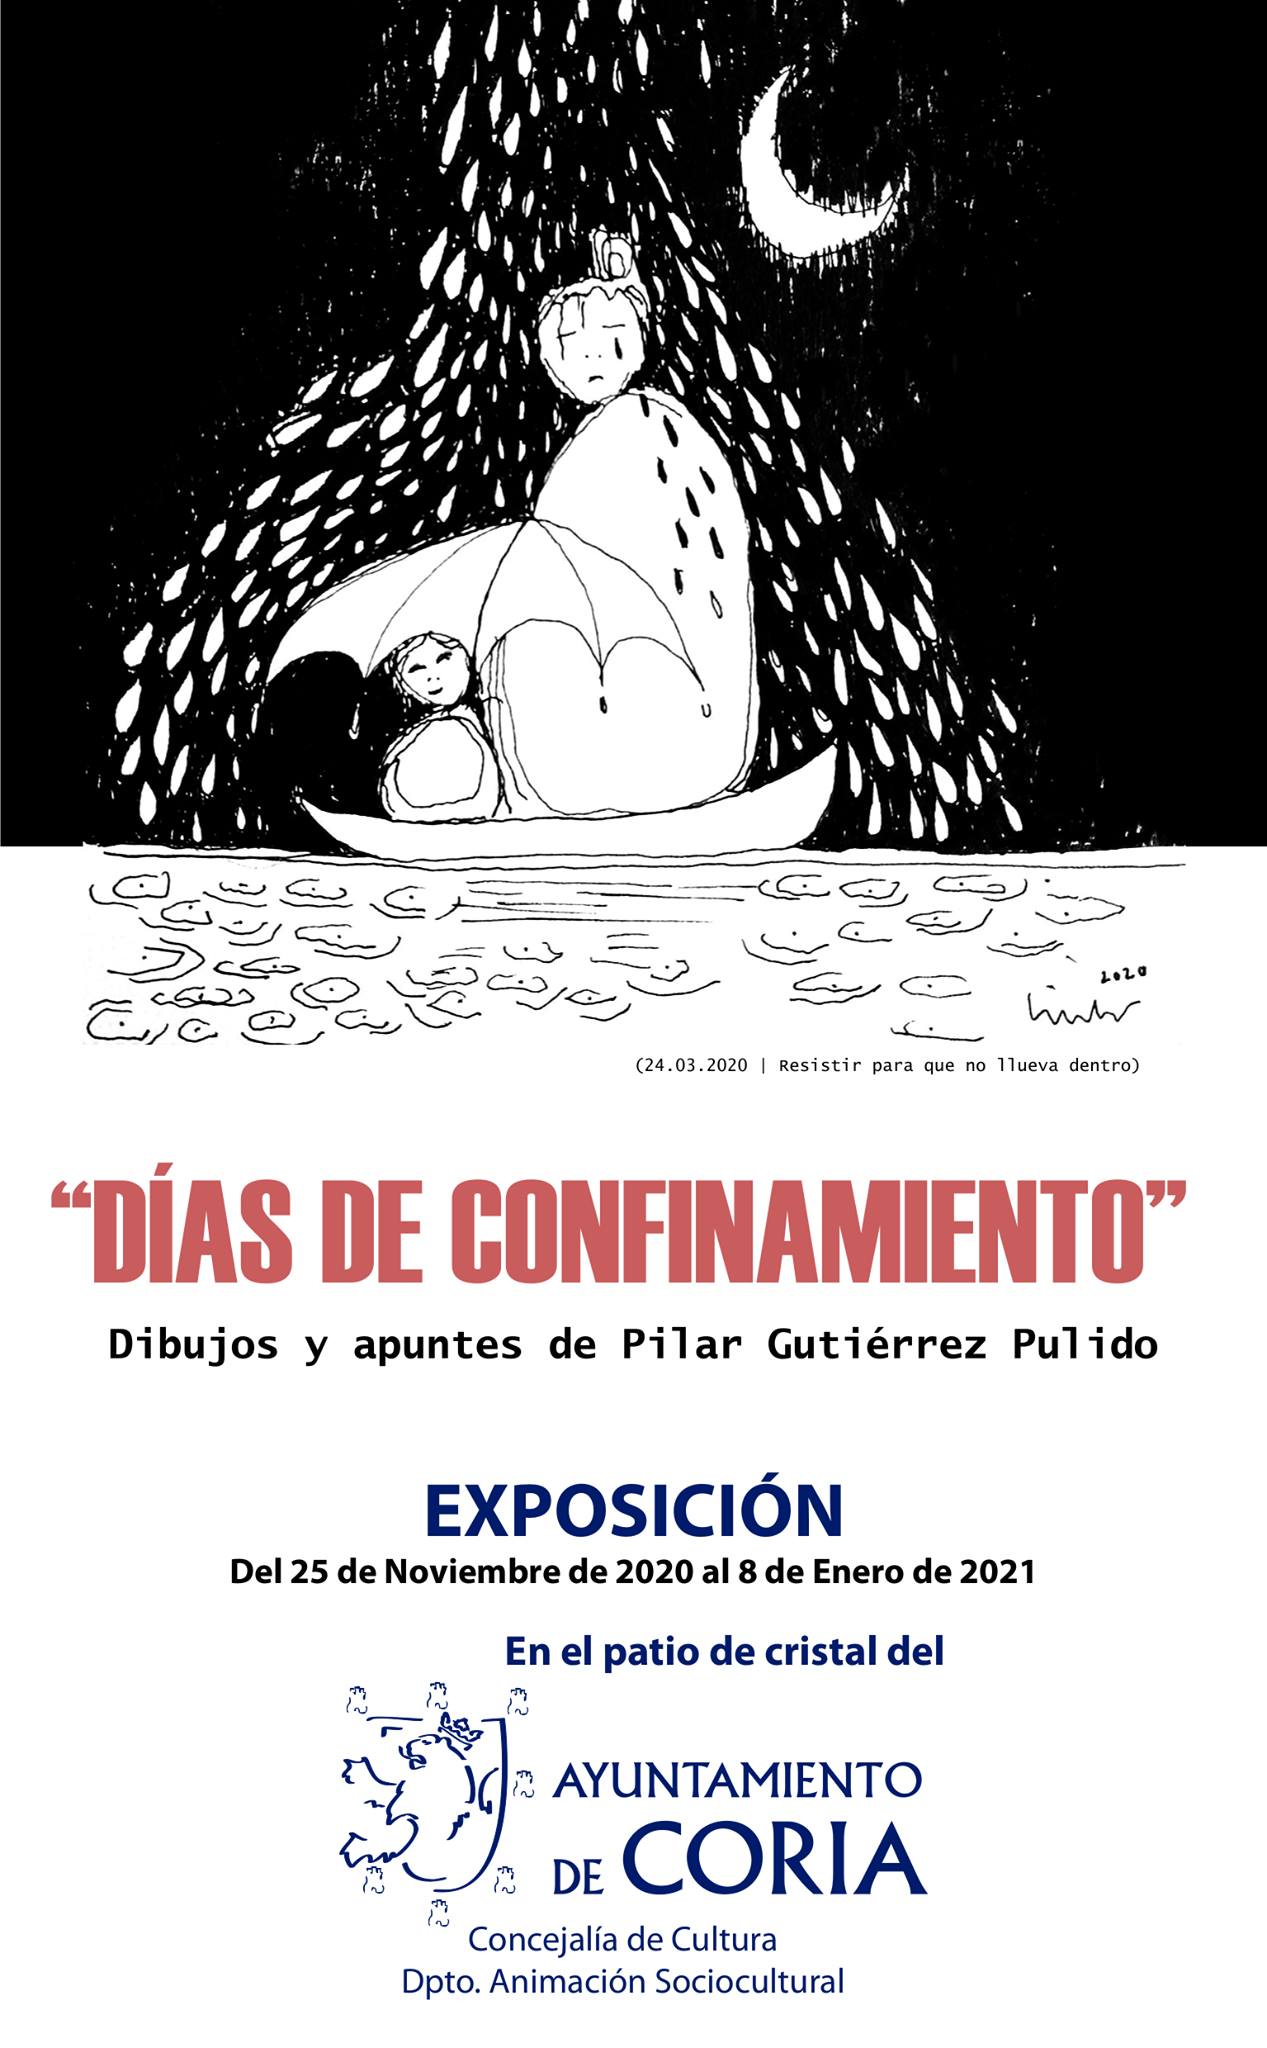 Exposición Días de Confinamiento (2020-2021) - Coria (Cáceres)